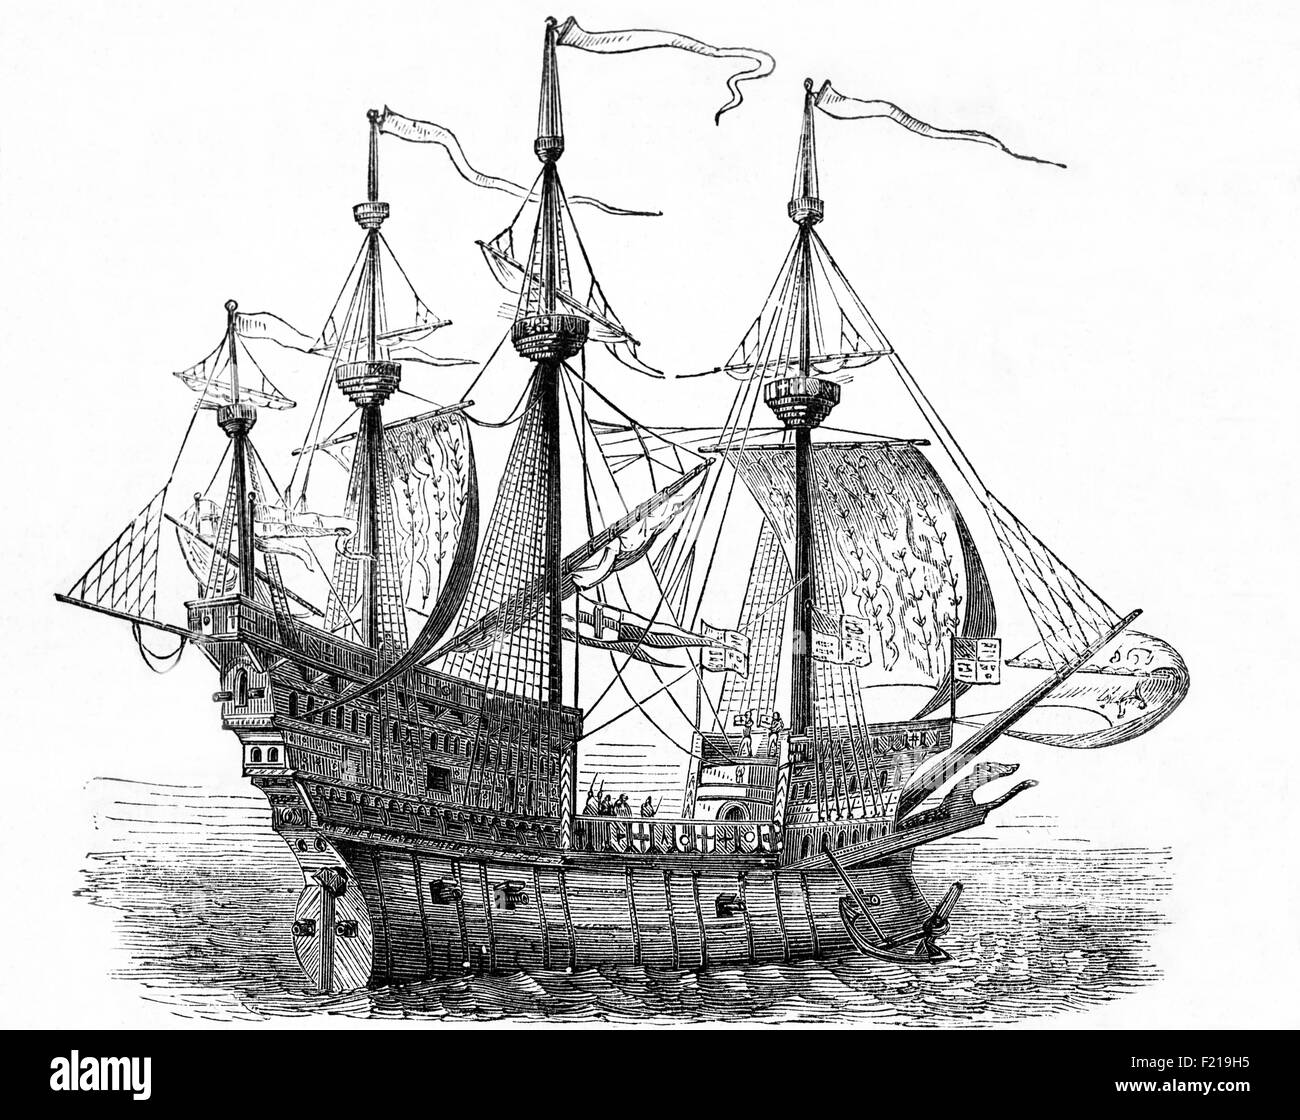 La Mary Rose è una nave da guerra a cremagliera della marina inglese Tudor del re Enrico VIII Ha servito per 33 anni in parecchie guerre contro la Francia, la Scozia e la Bretagna. Dopo essere stata sostanzialmente ricostruita nel 1536, ha visto la sua ultima azione il 19 luglio 1545. Guidò l'attacco alle galee di una flotta d'invasione francese, ma affondò nel Solent, gli stretti a nord dell'Isola di Wight. Da un disegno originale dell'artista del XVI secolo, Hans Holbein. Foto Stock